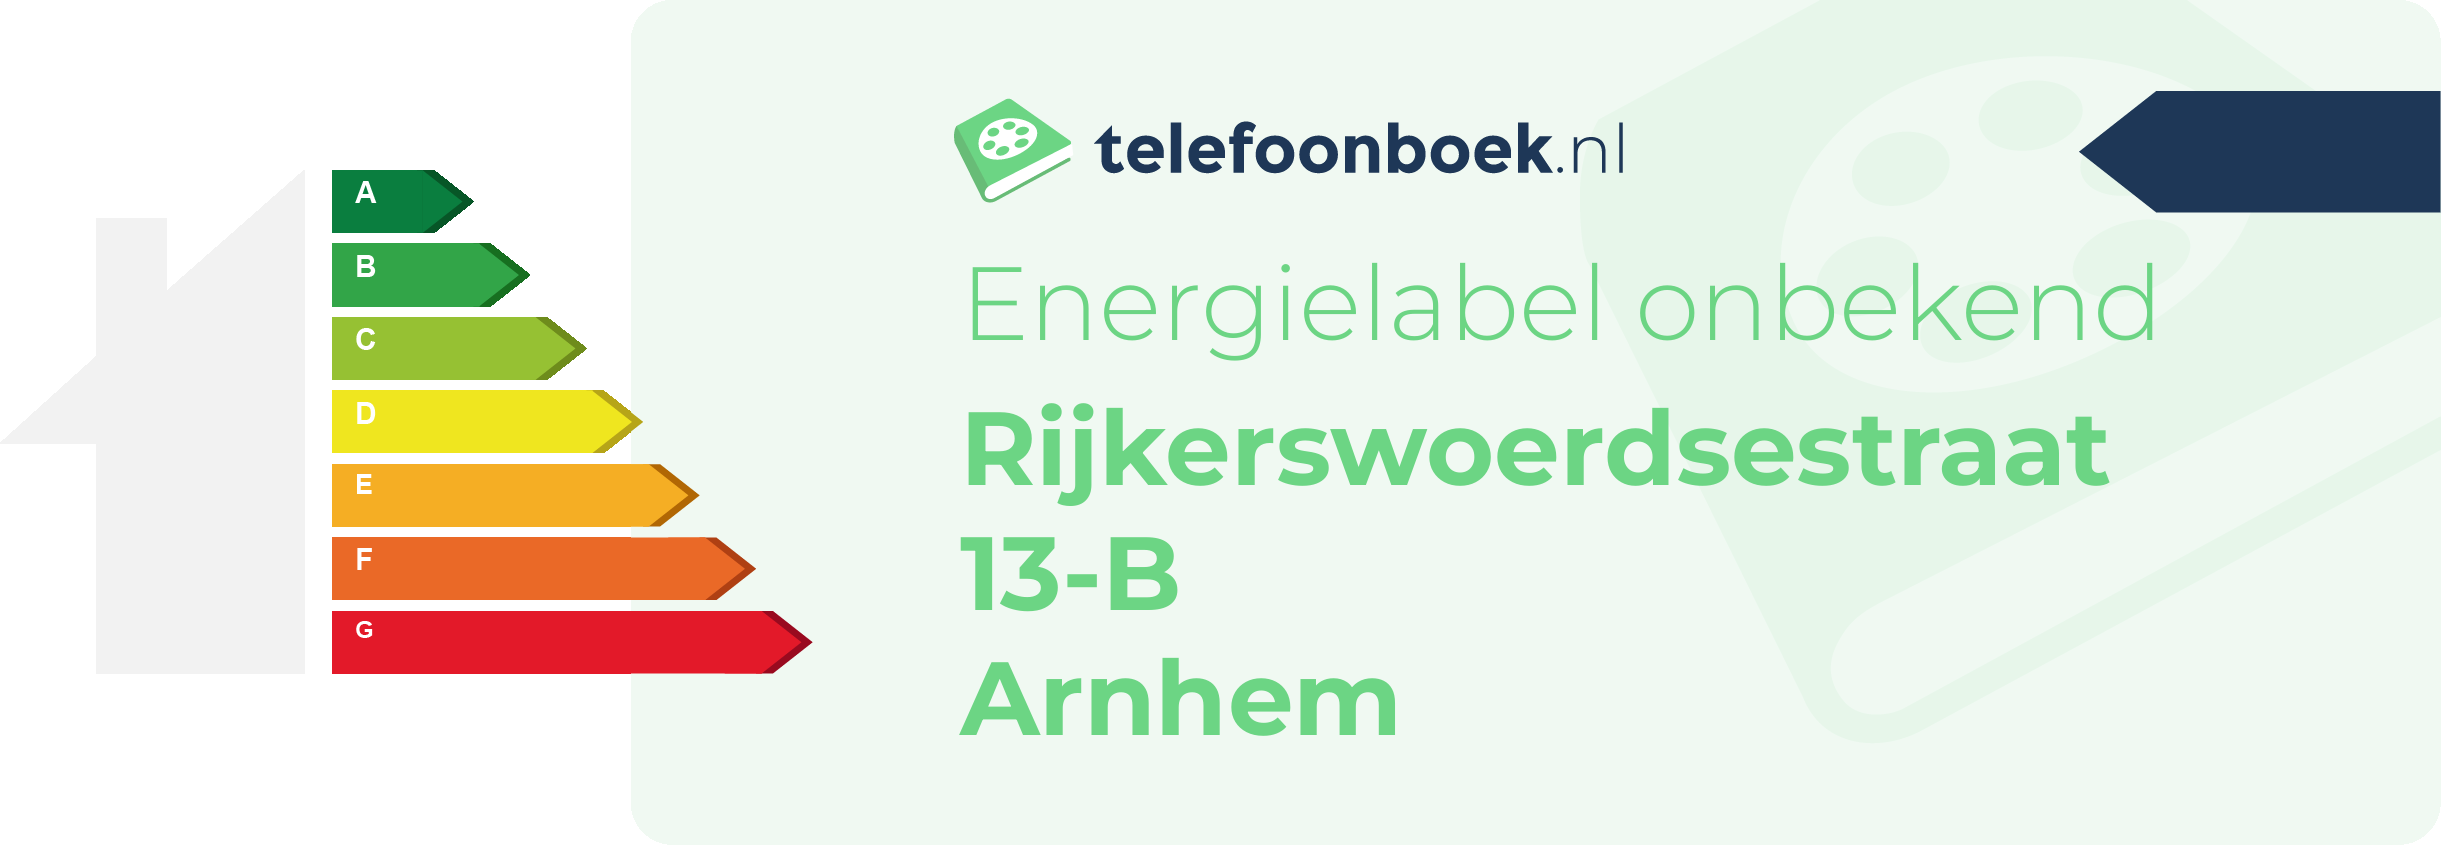 Energielabel Rijkerswoerdsestraat 13-B Arnhem